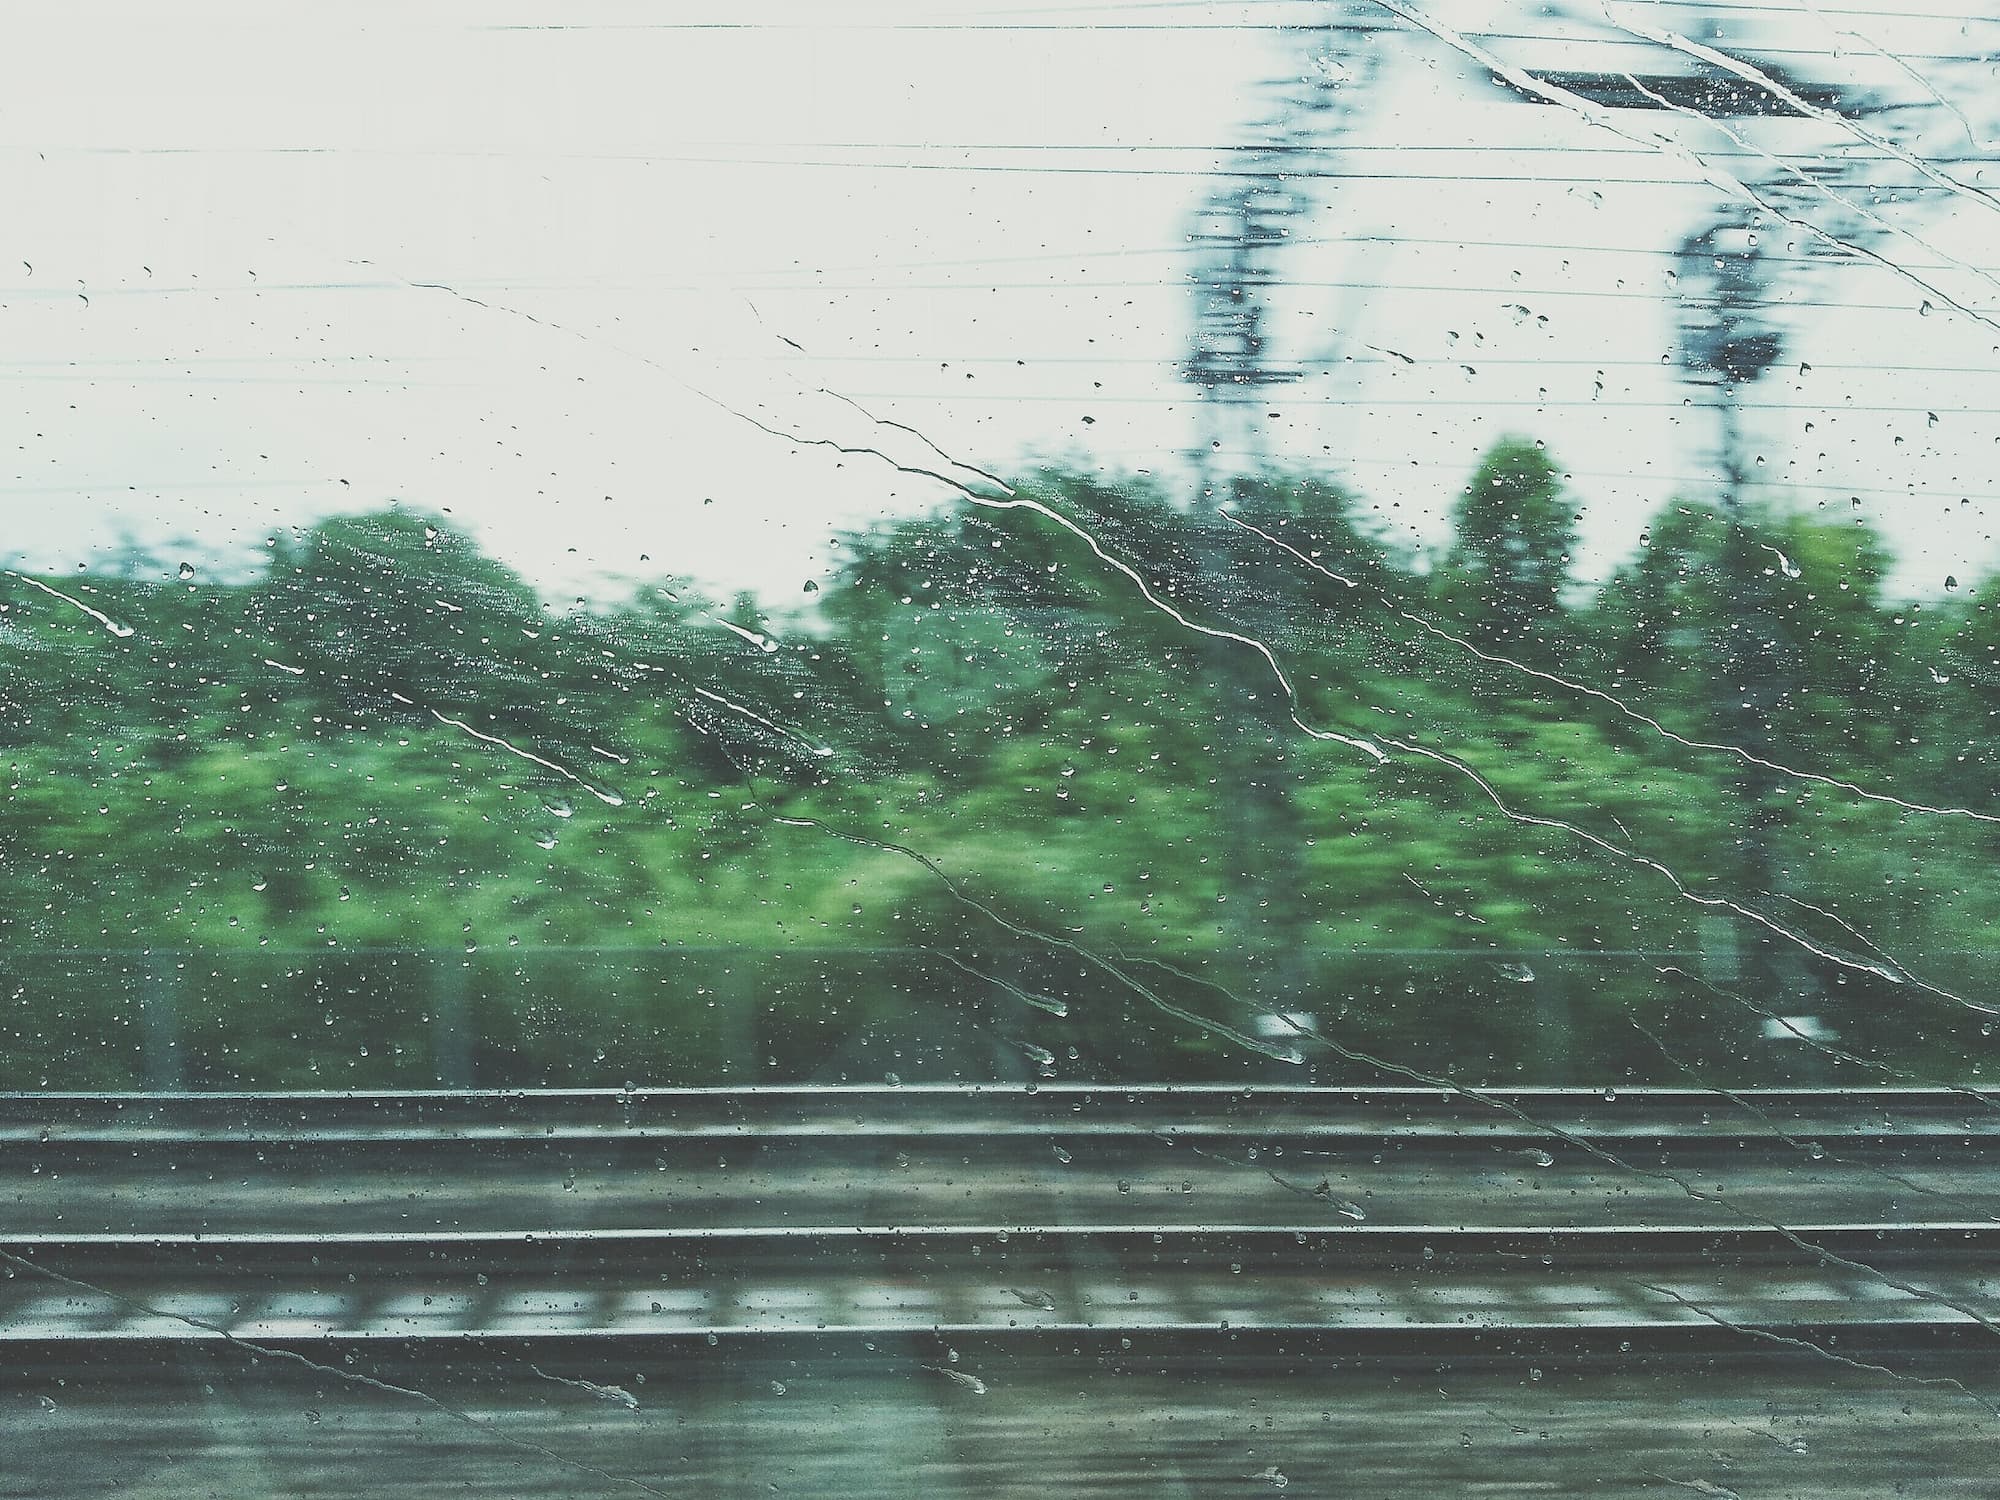 Train window with rain